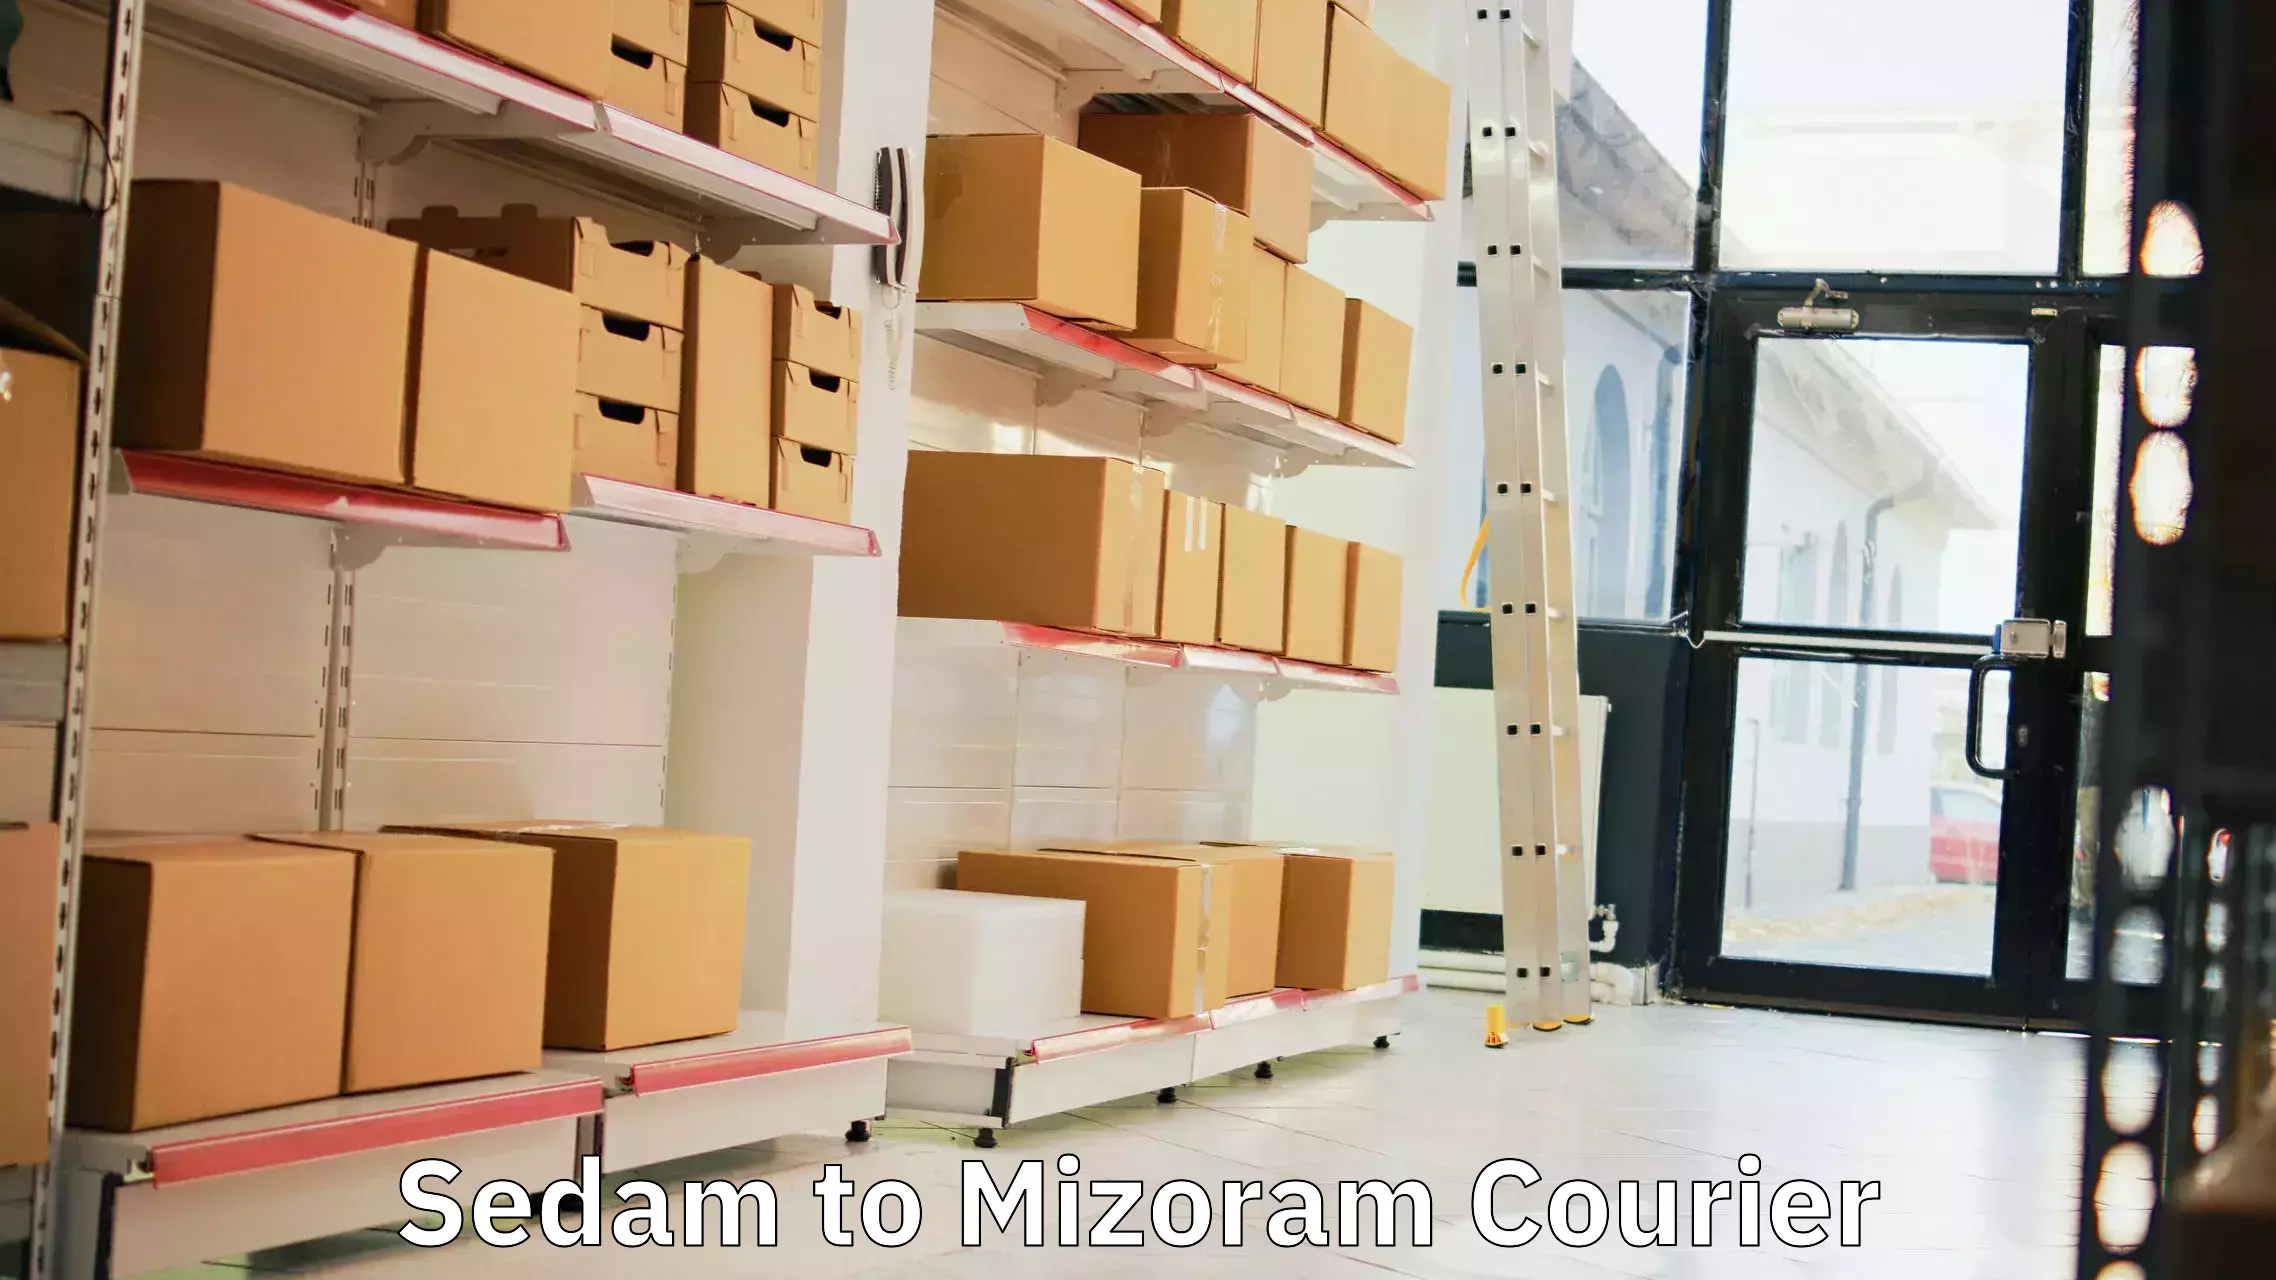 International courier rates Sedam to Mizoram